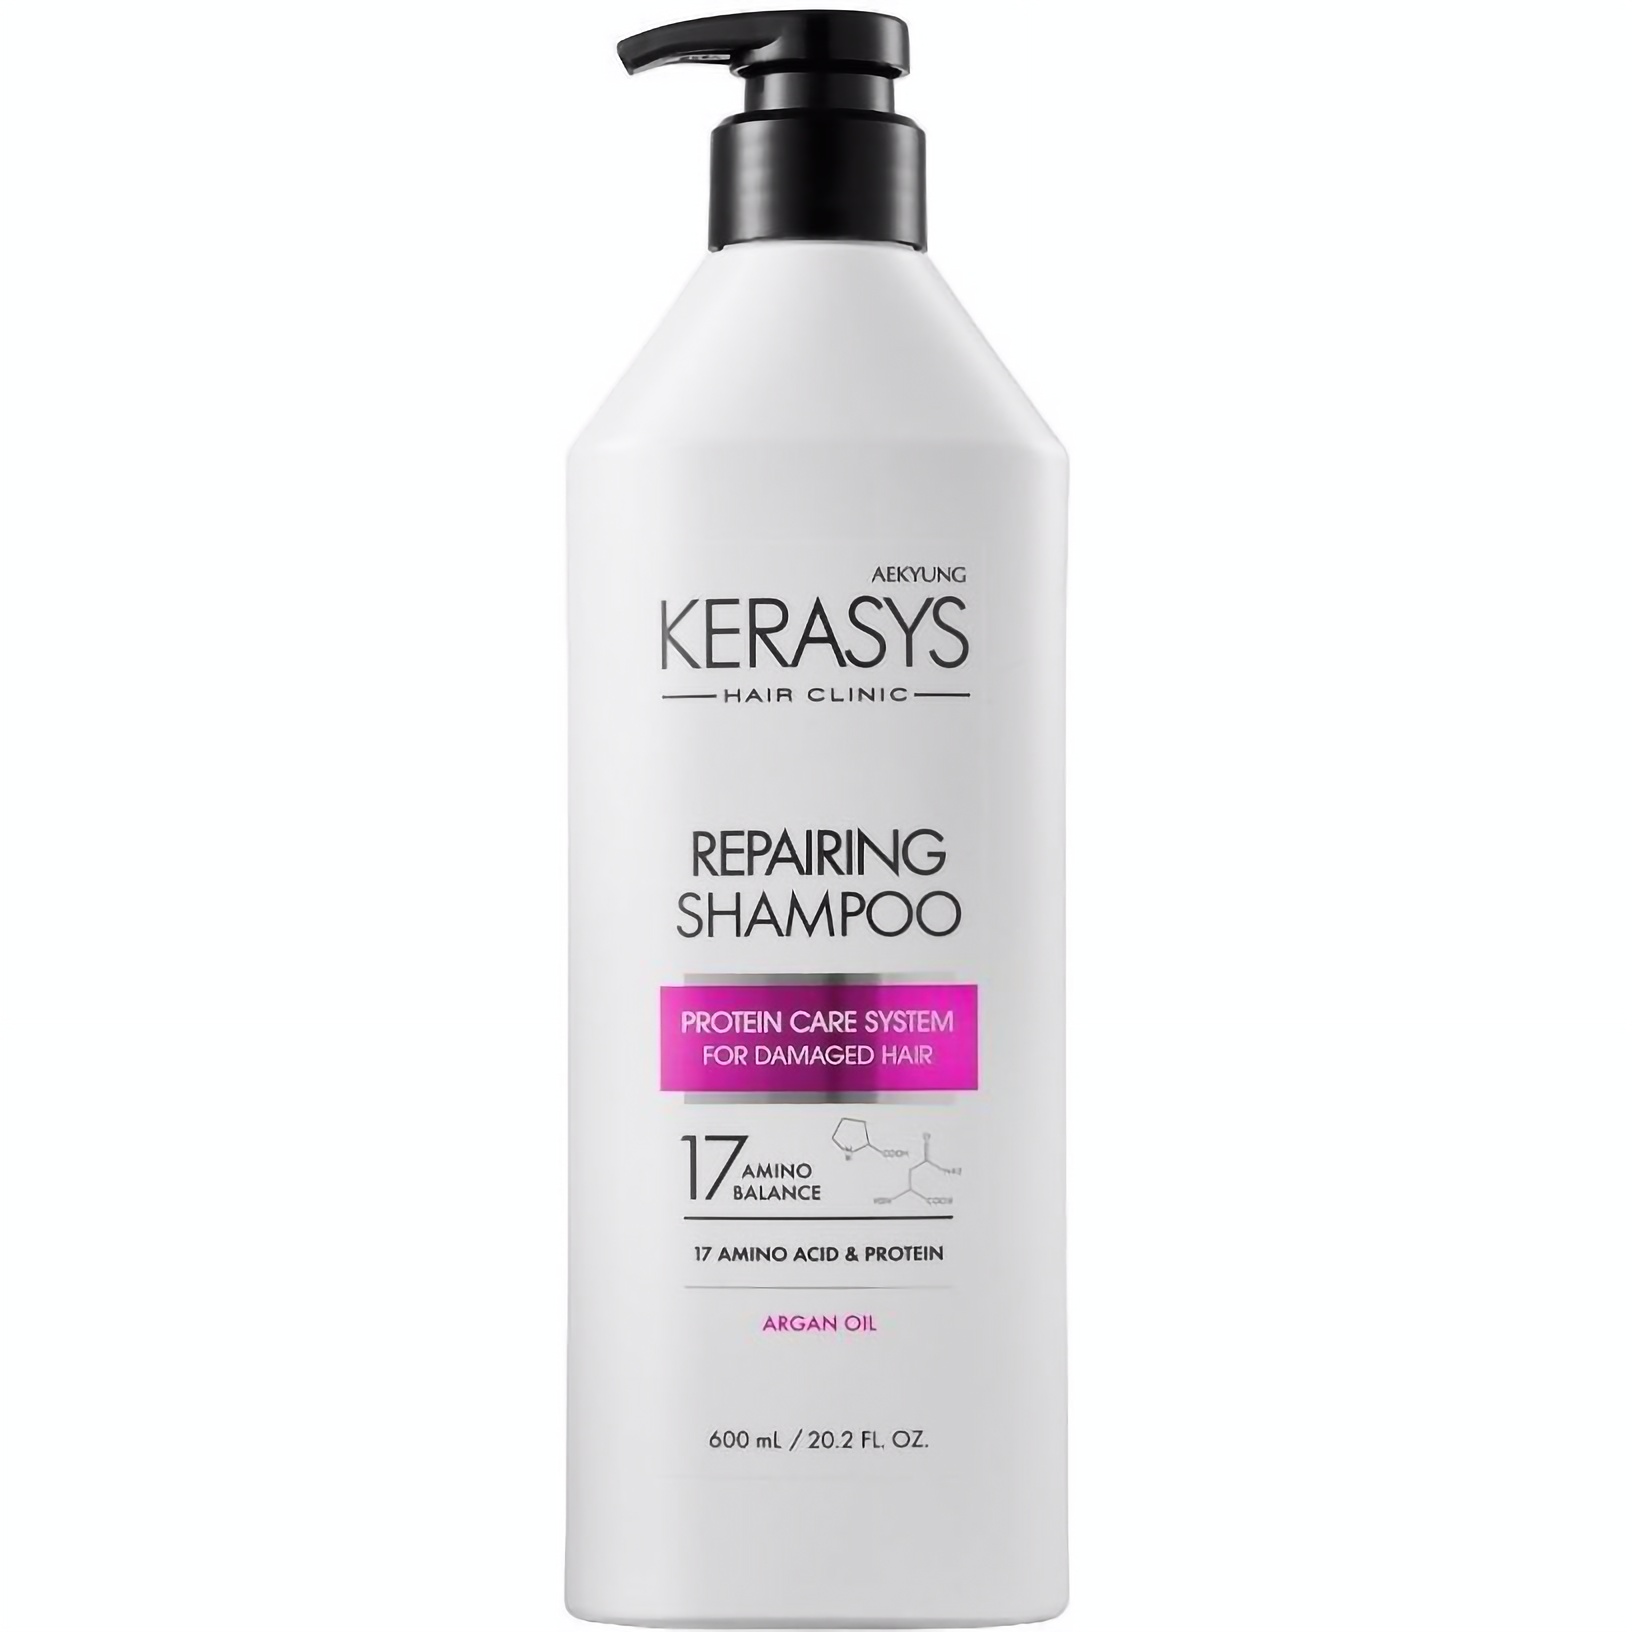 Шампунь Kerasys Hair Clinic Repairing Shampoo, що відновлює, 600 мл - фото 1